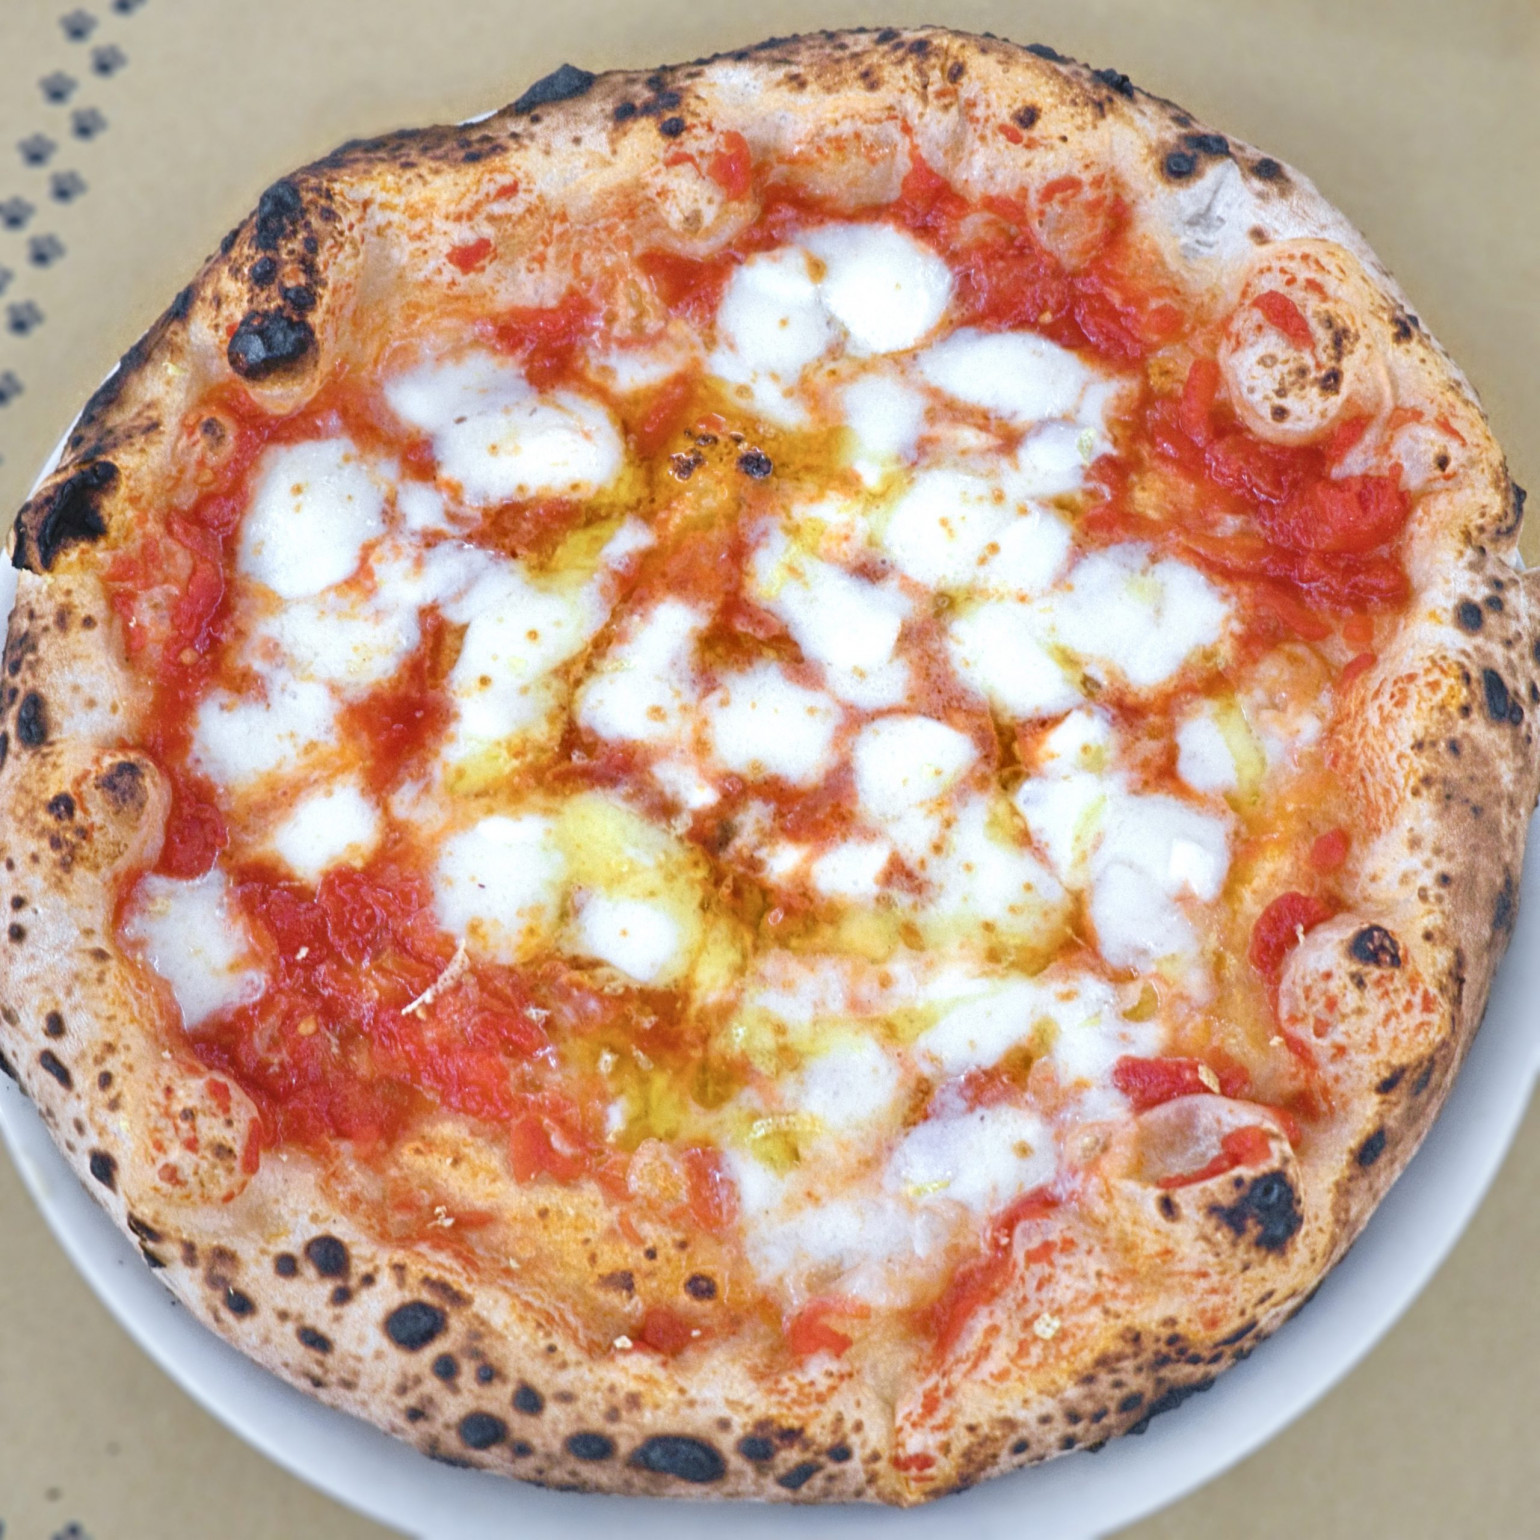 Mozzarella per la pizza come e quale utilizzare? Garage Pizza